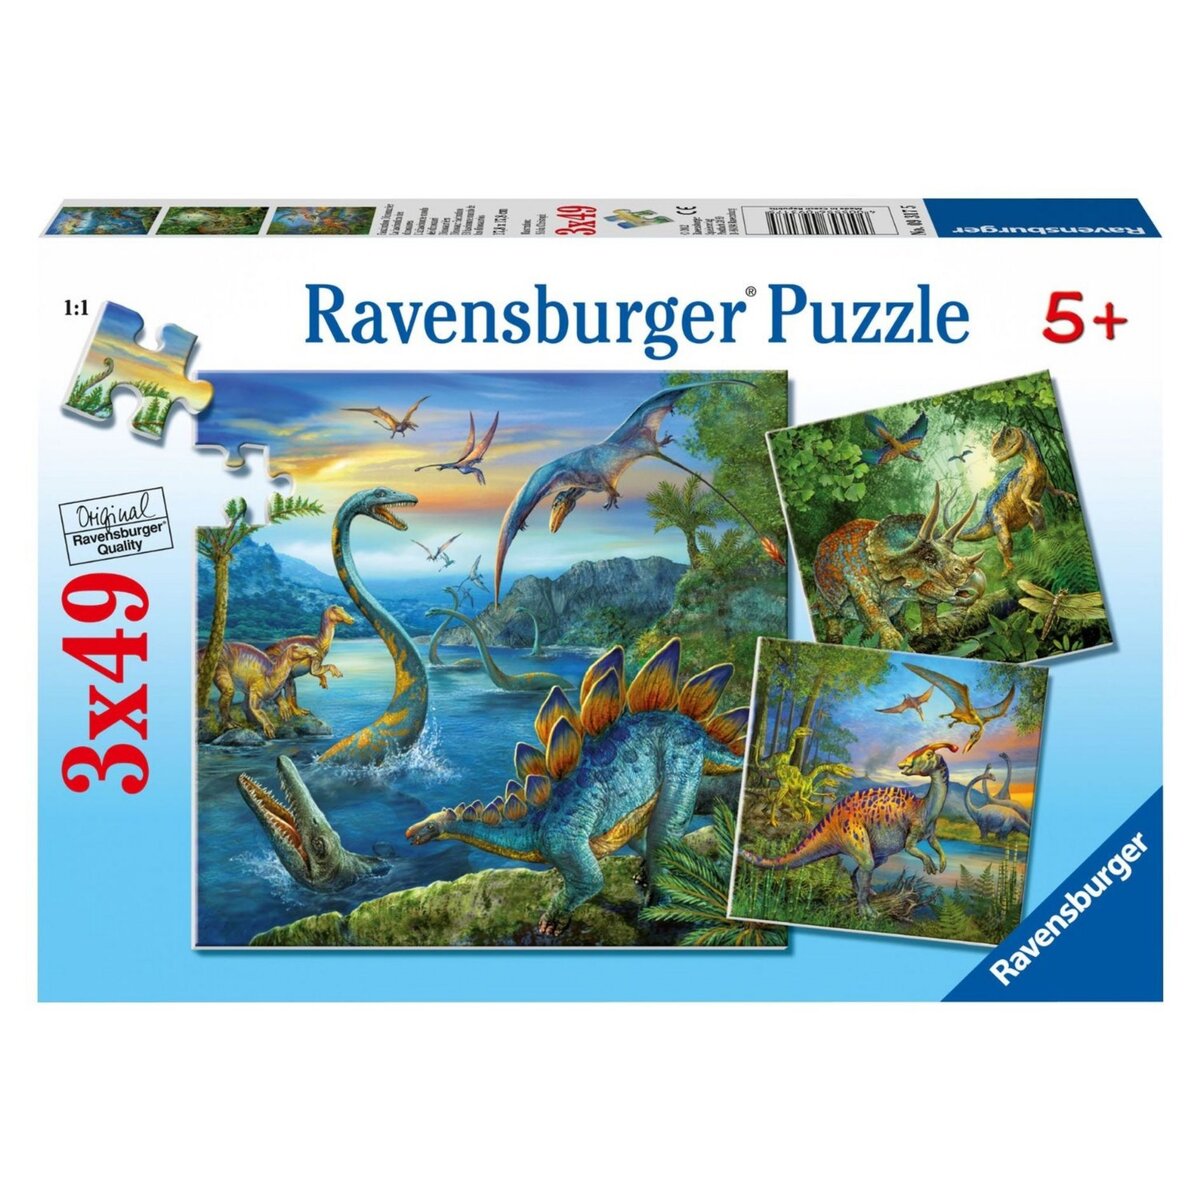 Puzzle panoramique dinosaures 100 pièces